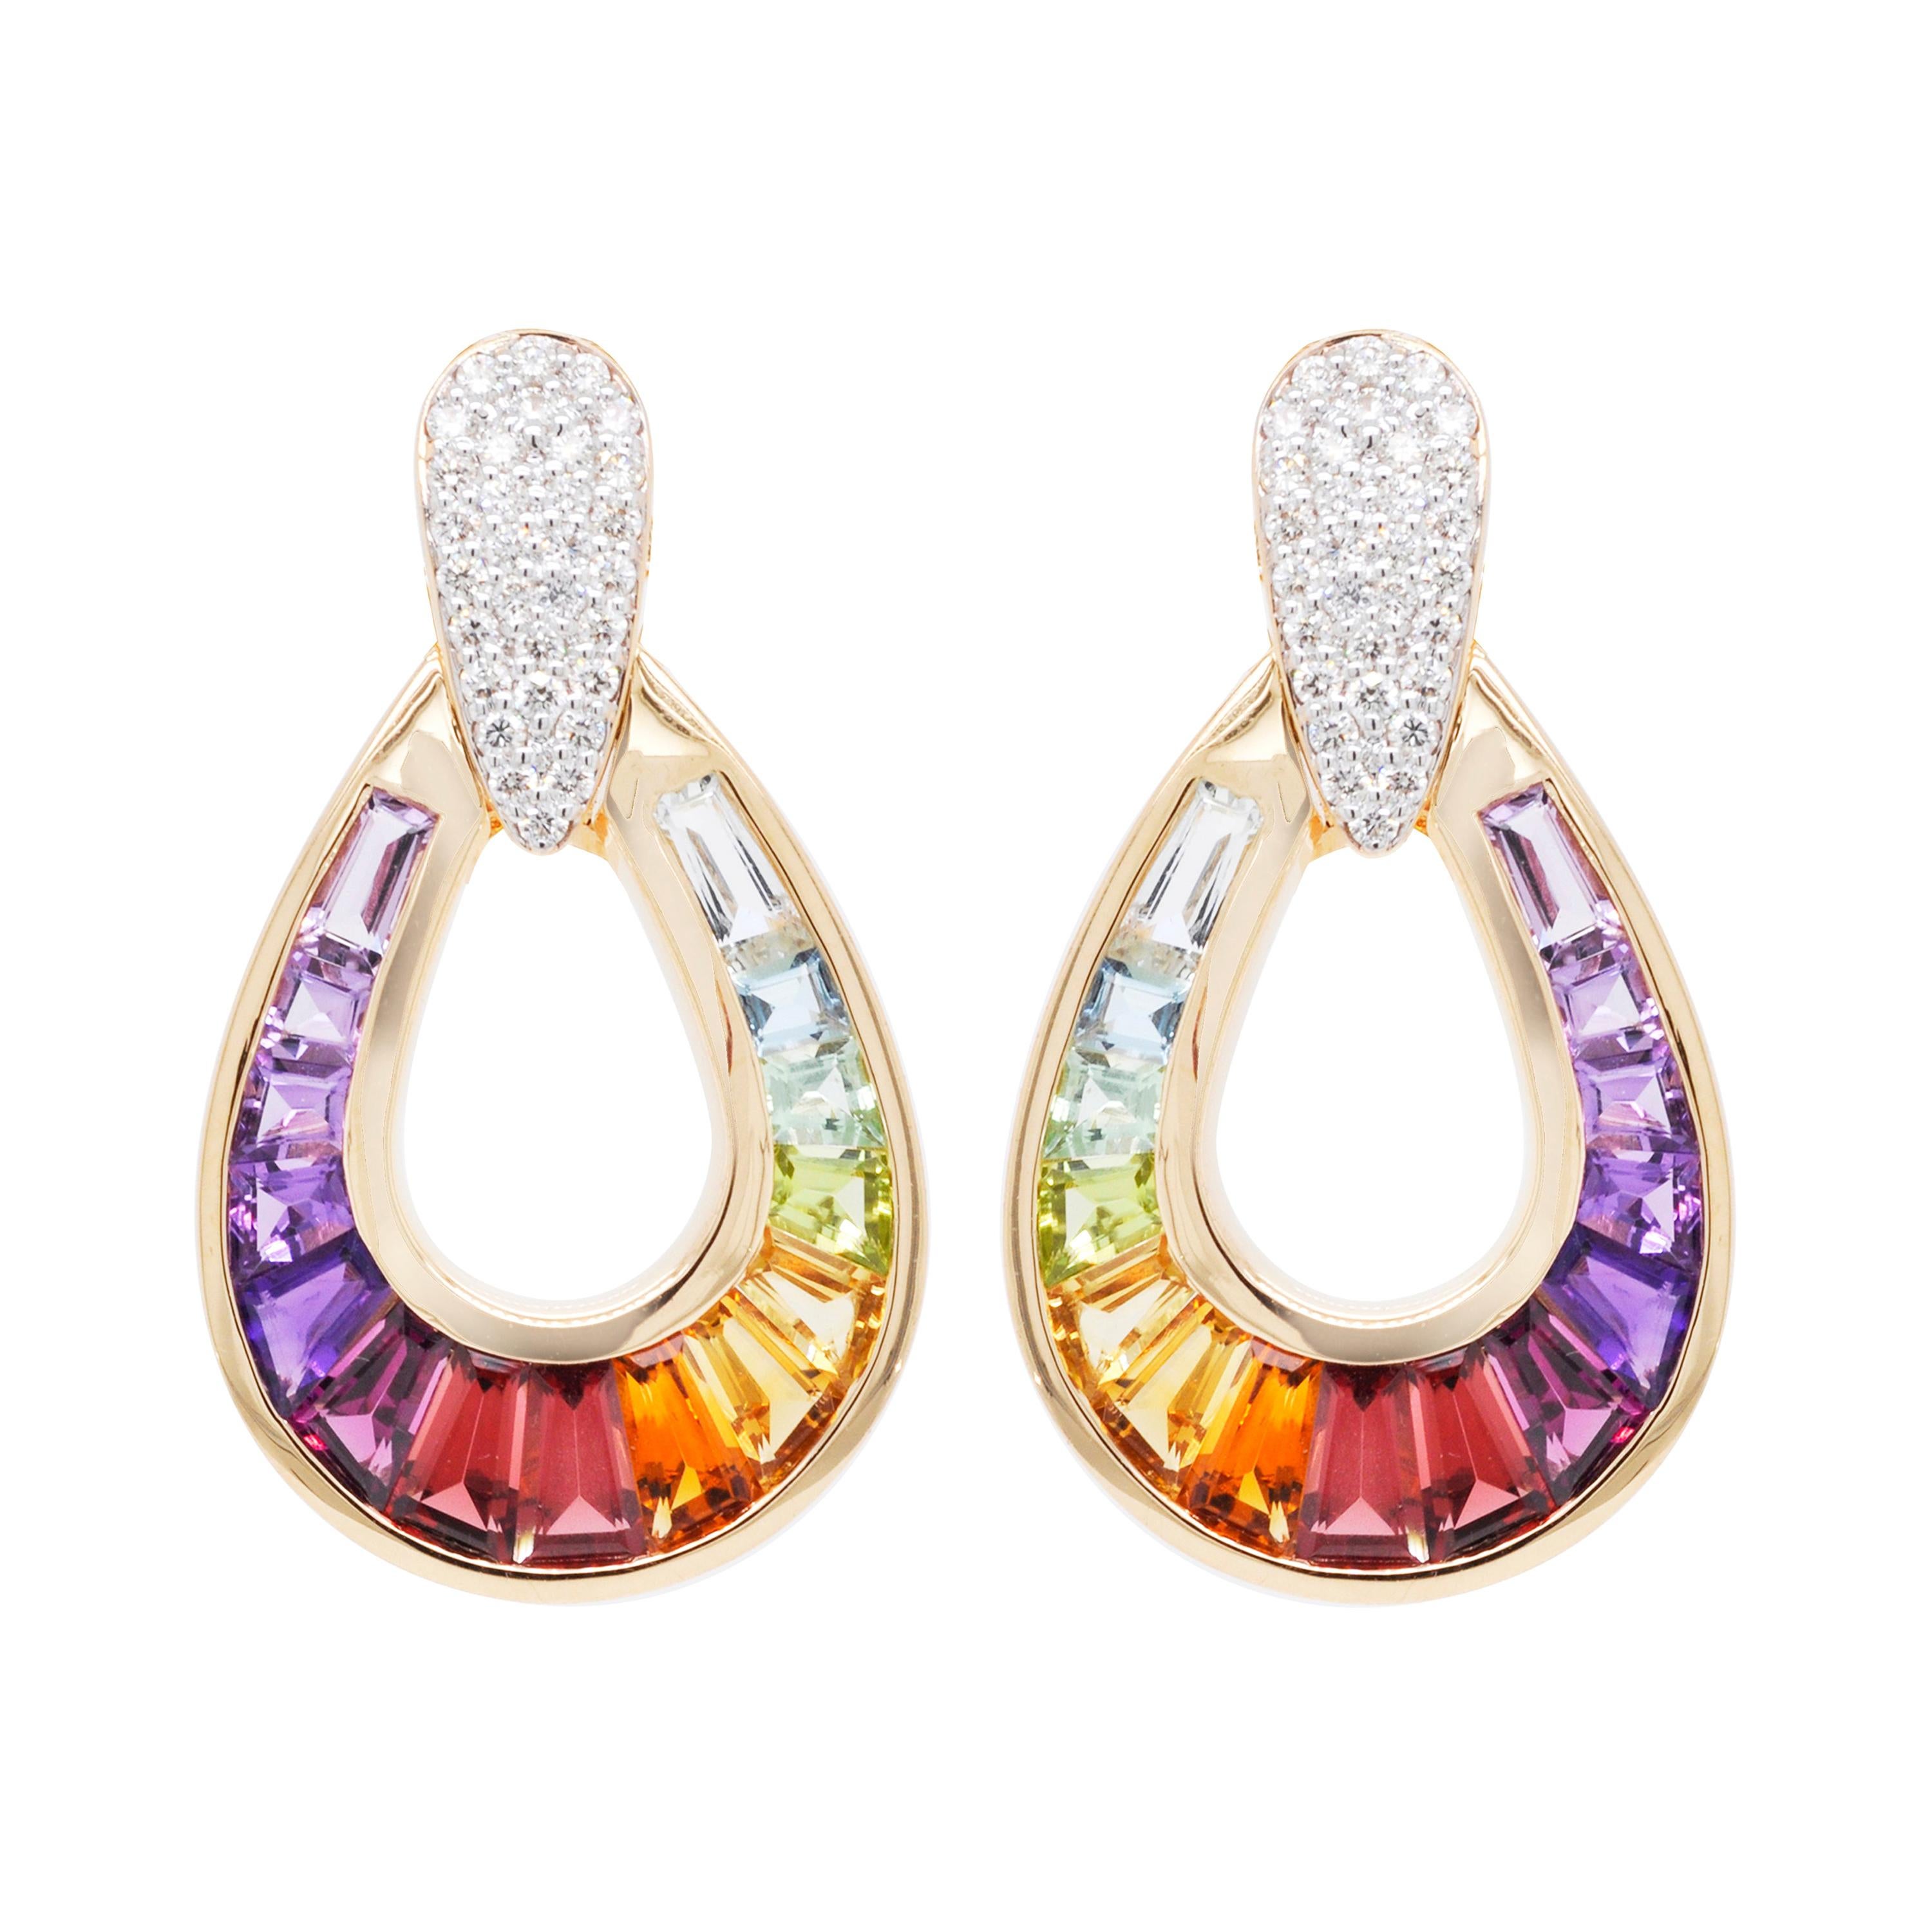 Pendants d'oreilles en or 18 carats avec diamants baguettes multicolores et arc-en-ciel